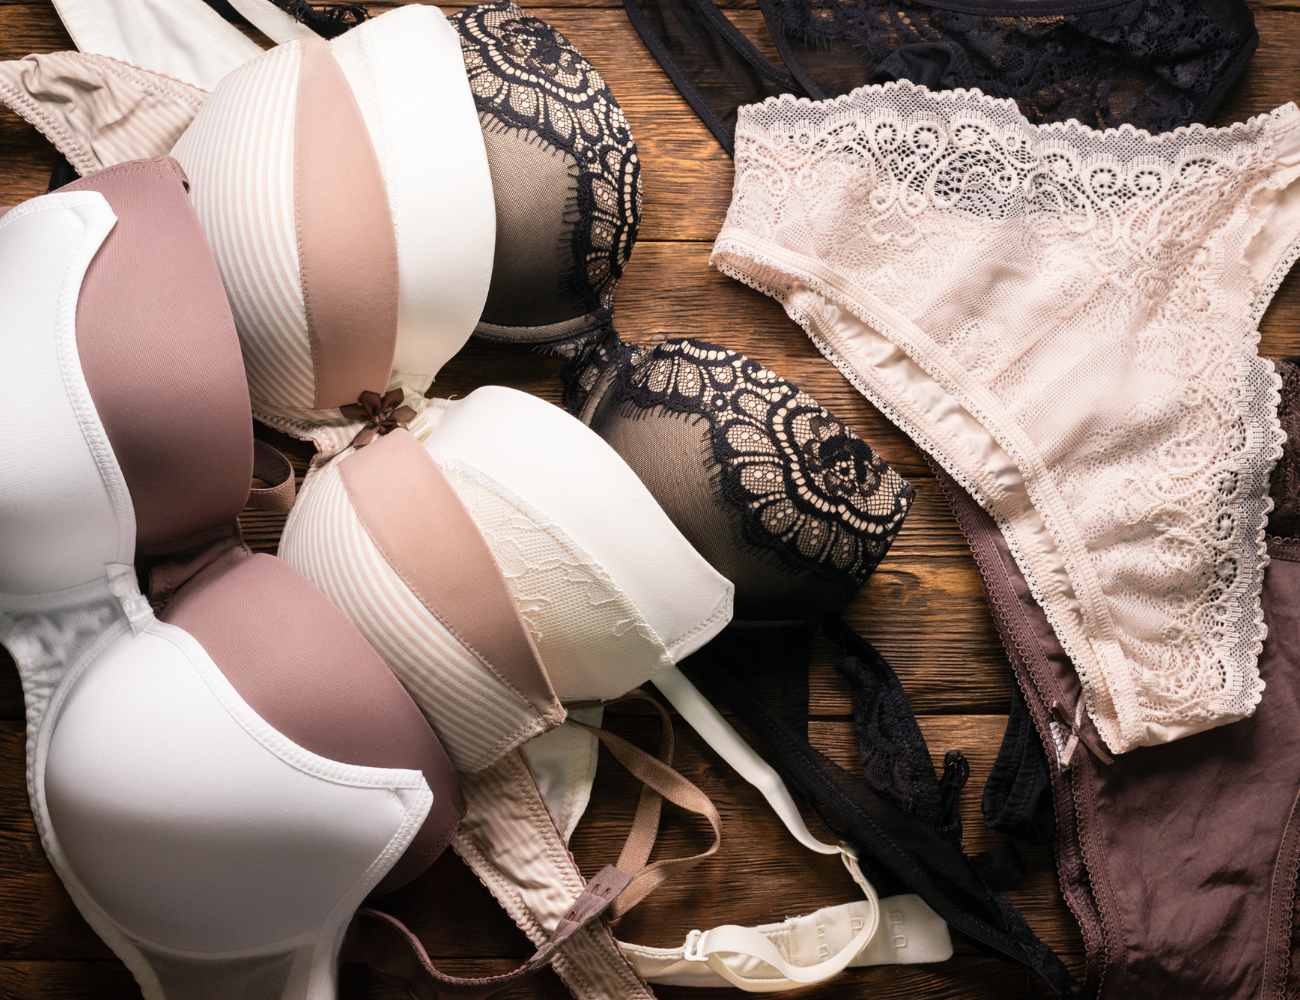 7 Ways To Make Money Selling Dirty Underwear Online